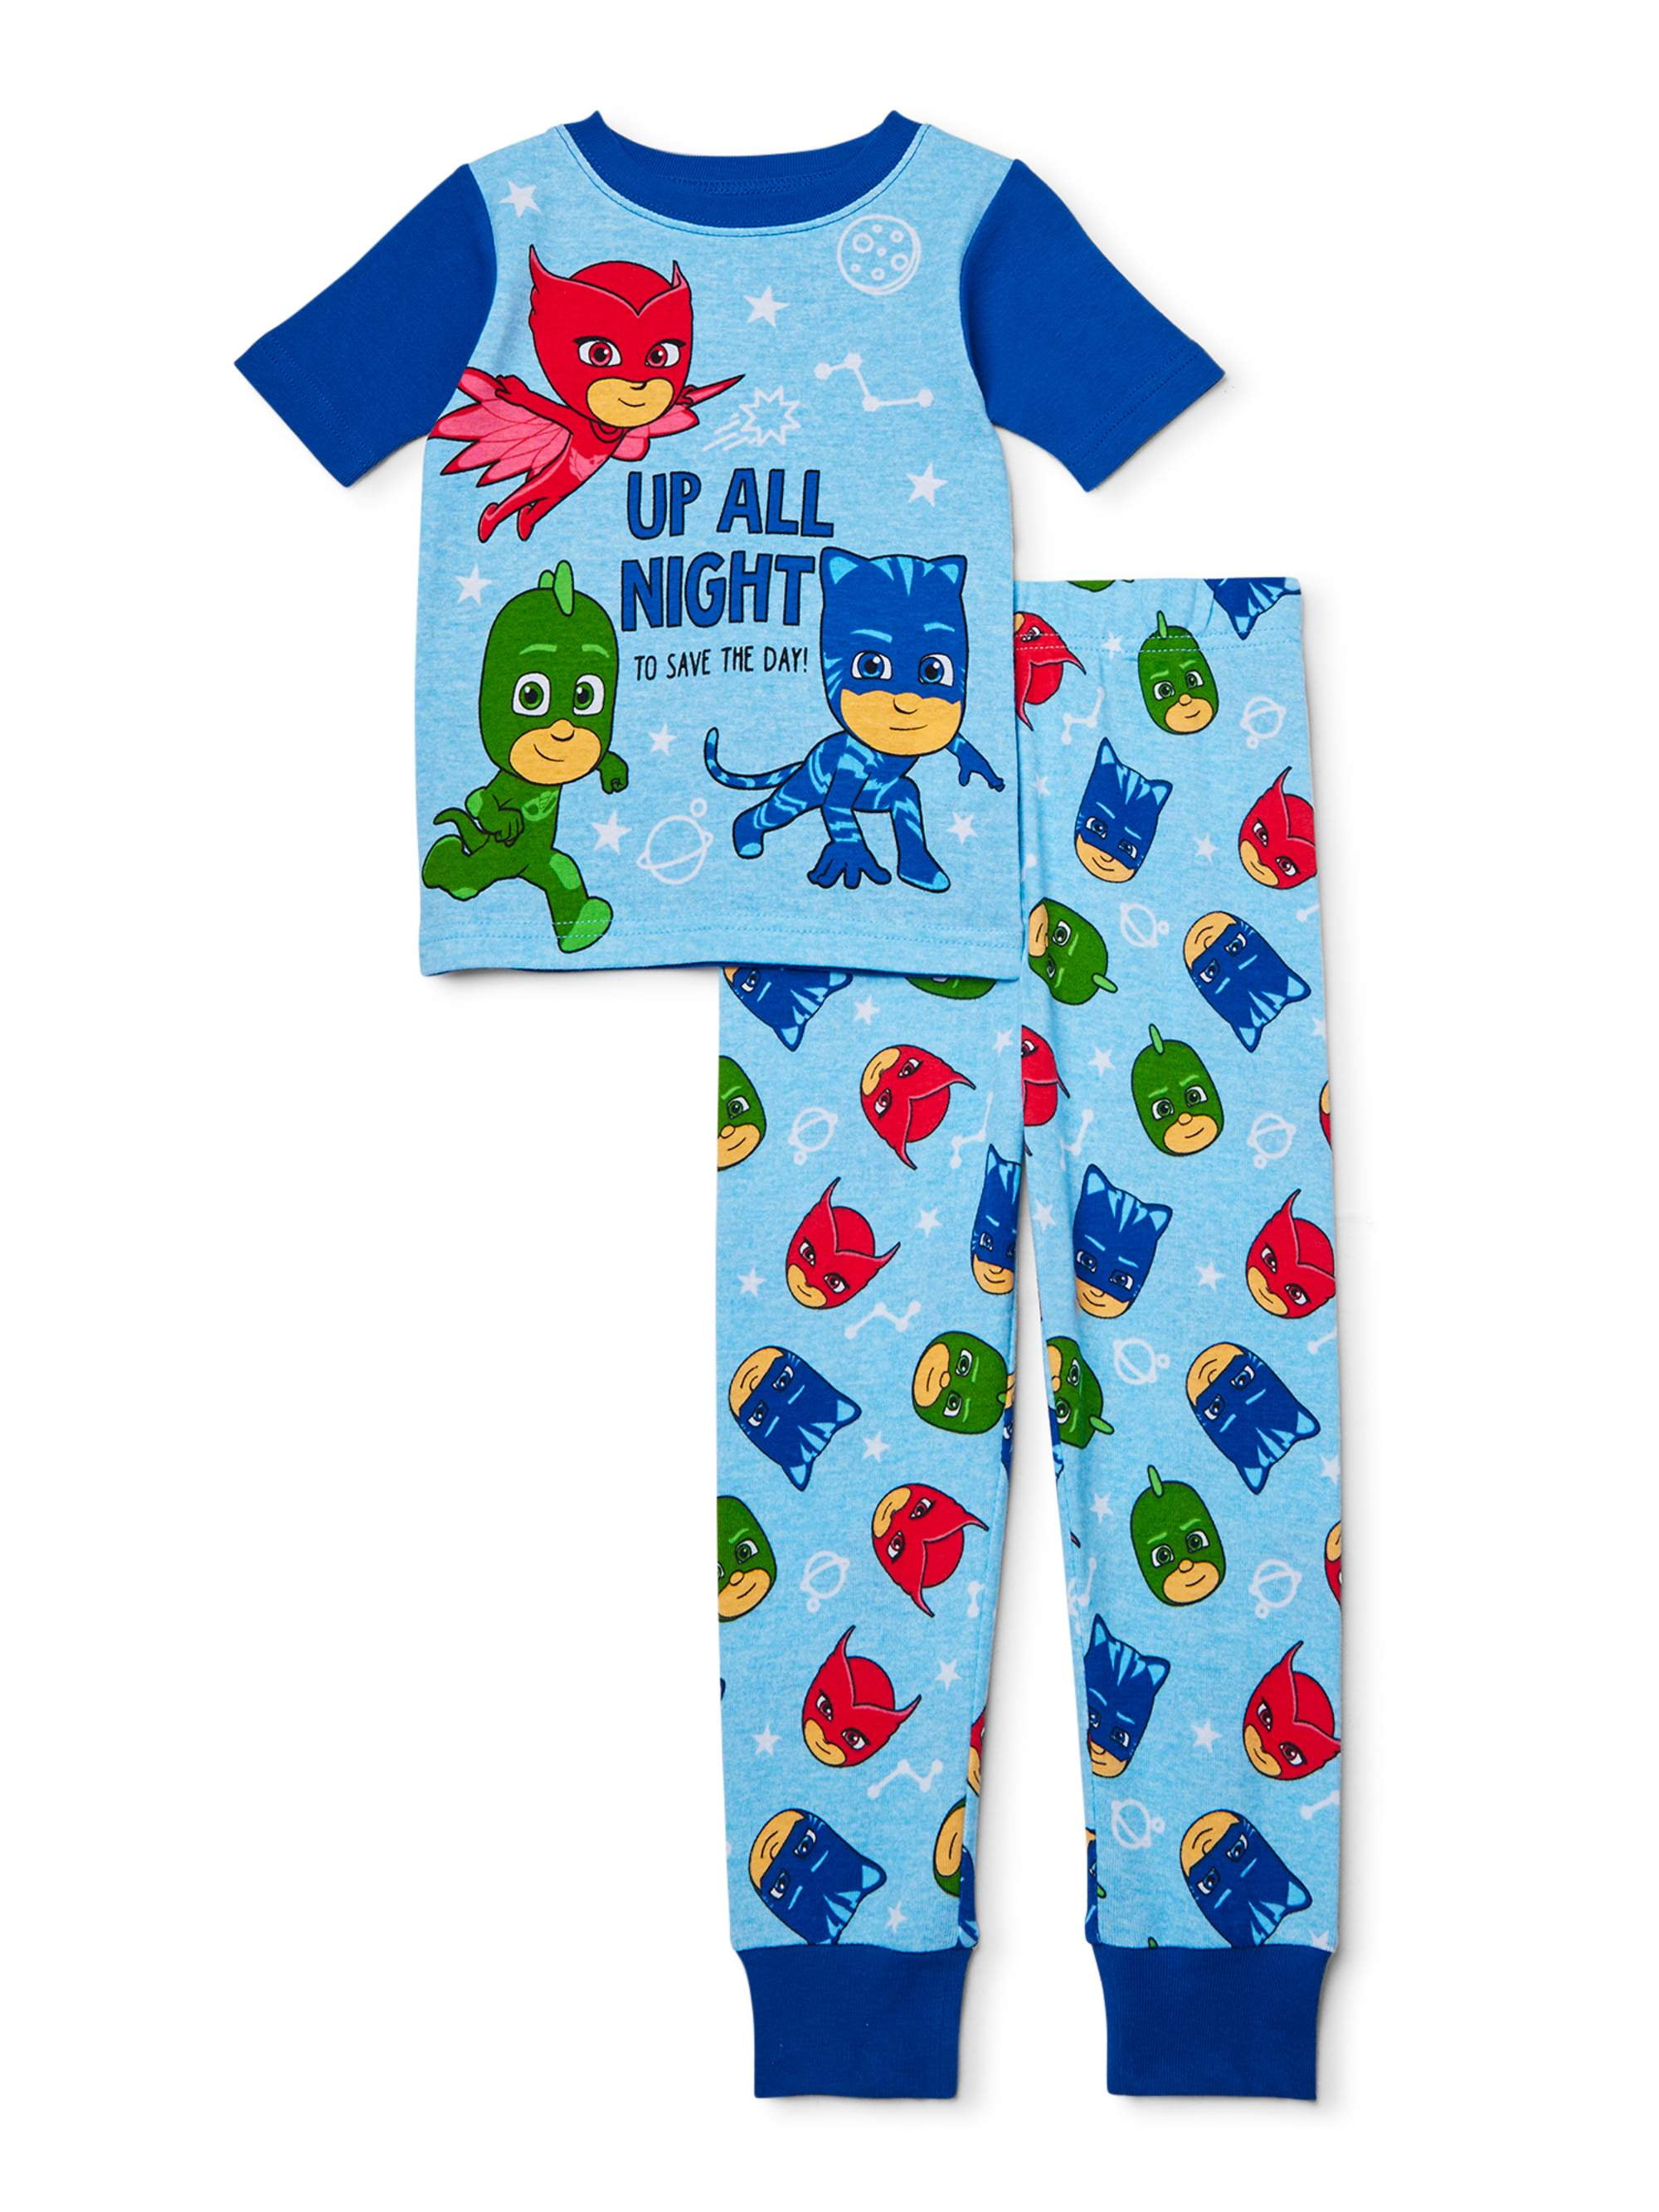 PJ Masks Toddler Boys 4 5 4T 5T Pjs Pajamas Shirt Top Pants 